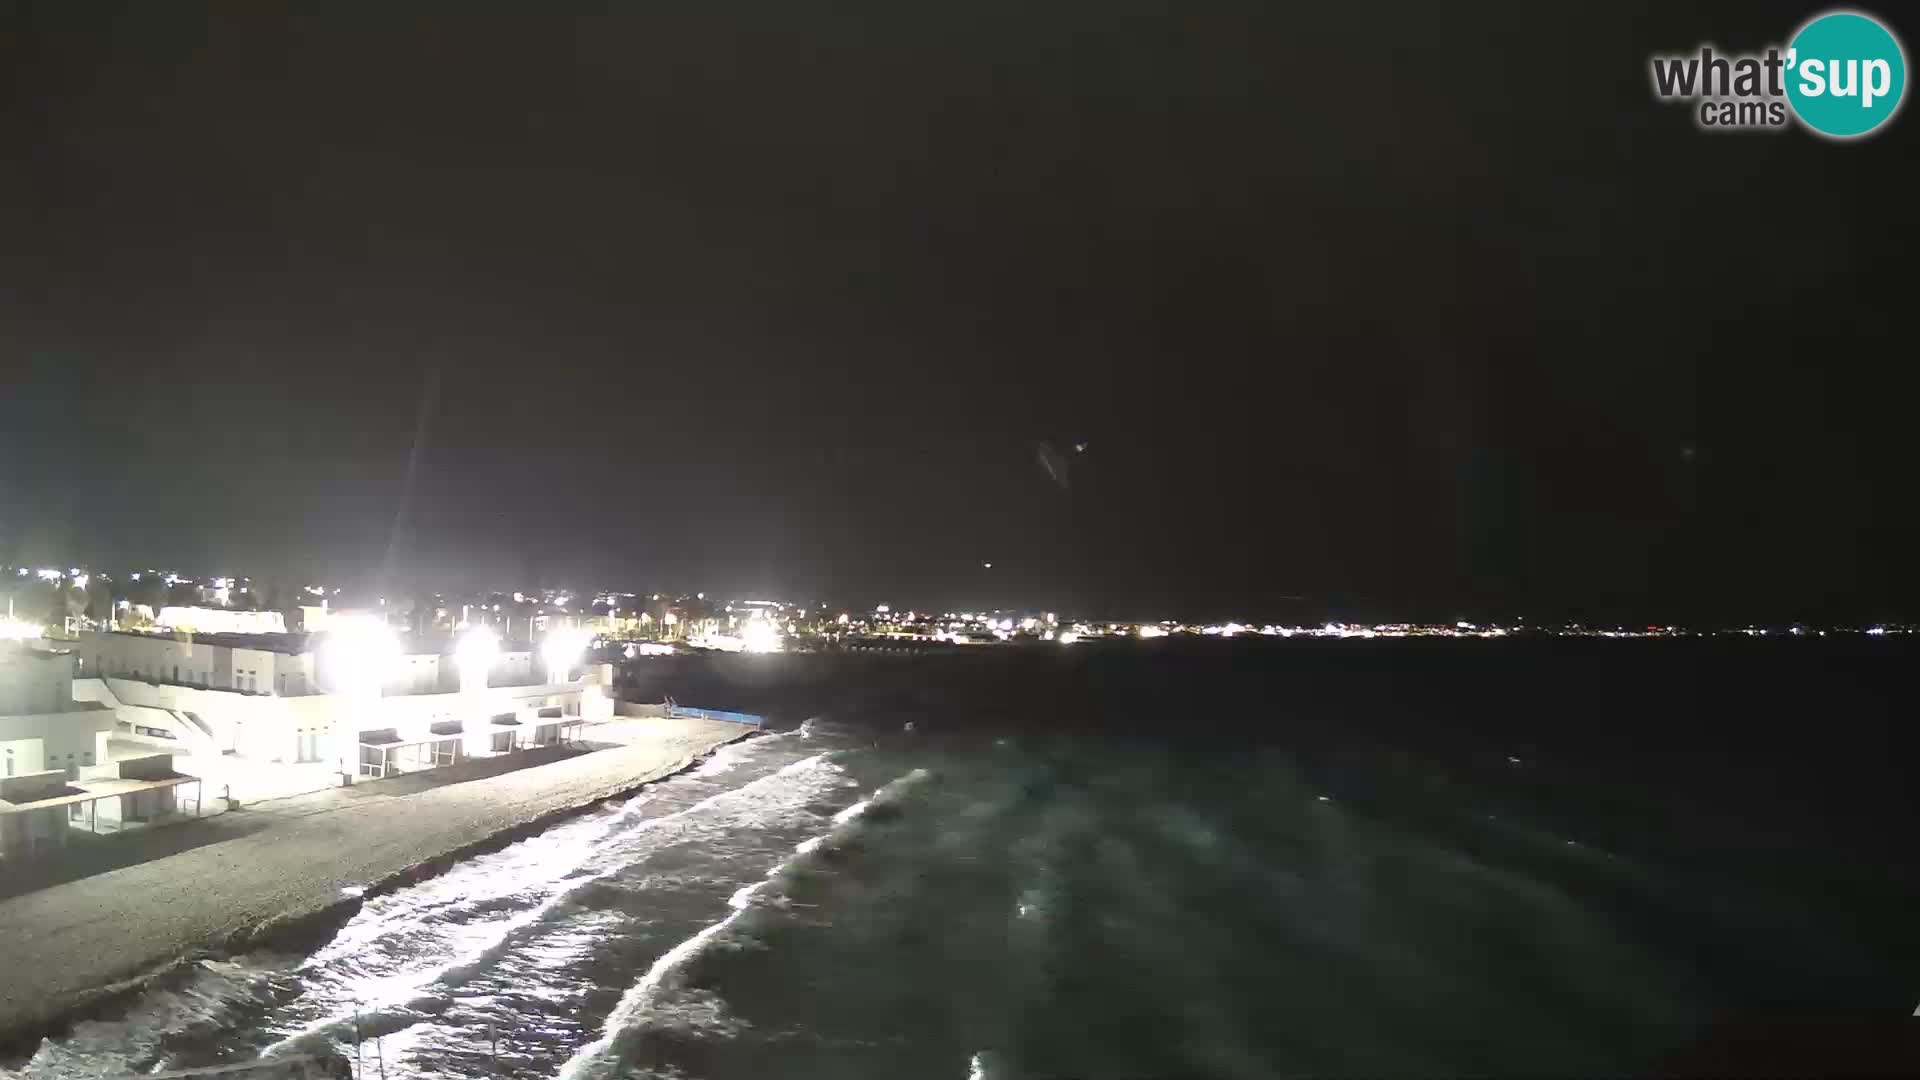 Camera en vivo Golfo de Cagliari – Playa del Poetto – Cerdeña